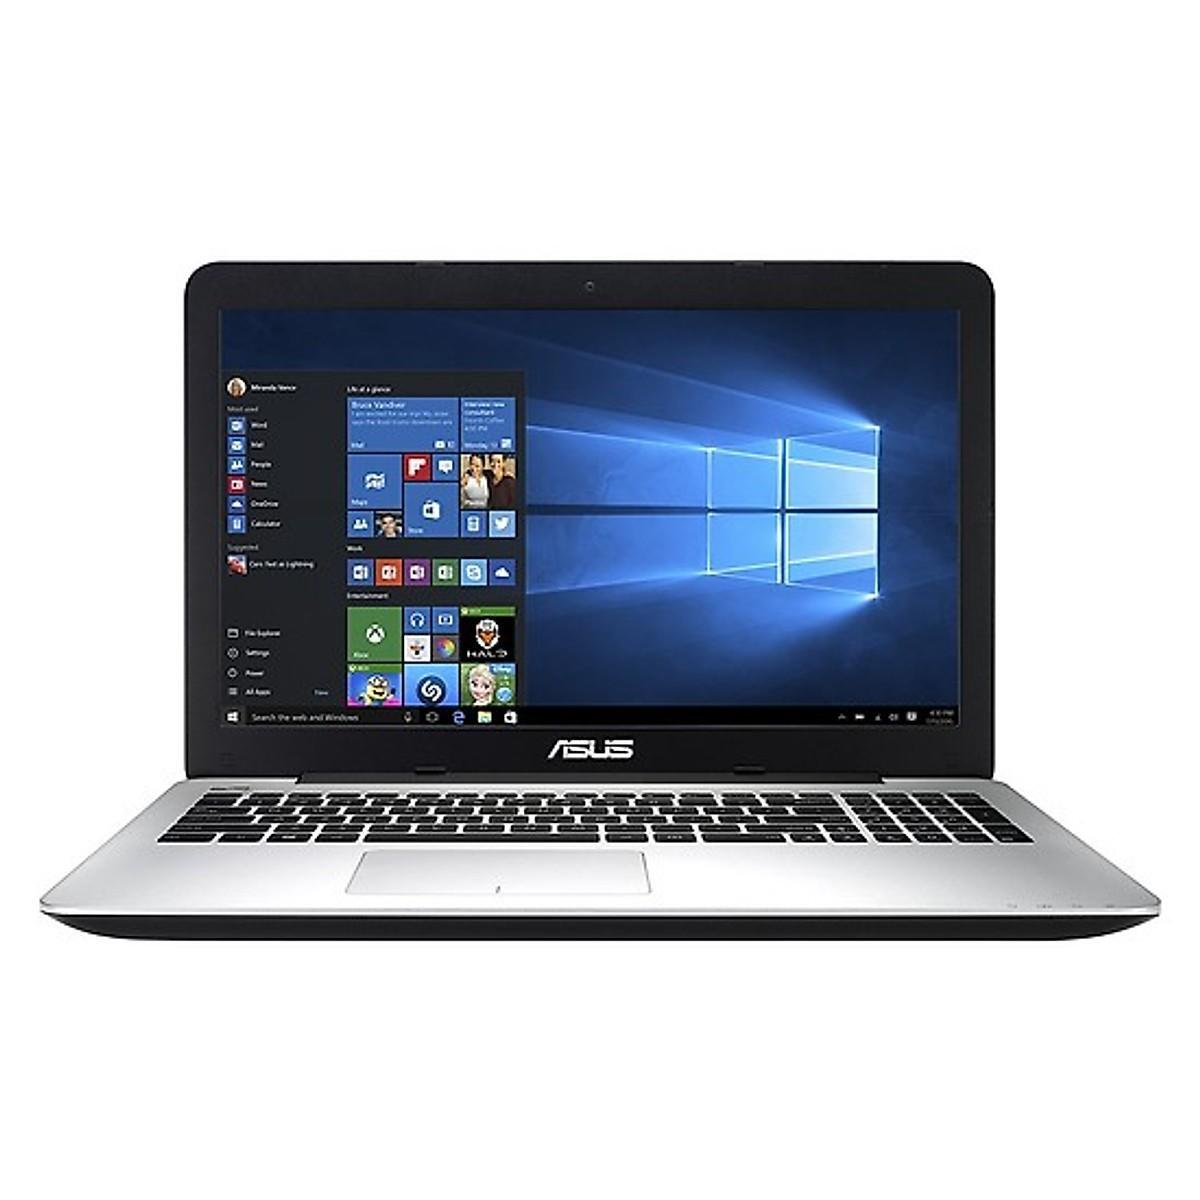 Laptop Asus X555UJ-XX064D - Intel Core i5-6200U, 4GB RAM, HDD 500GB, NVidia GeForce 920M 2GB, 15.6 inch